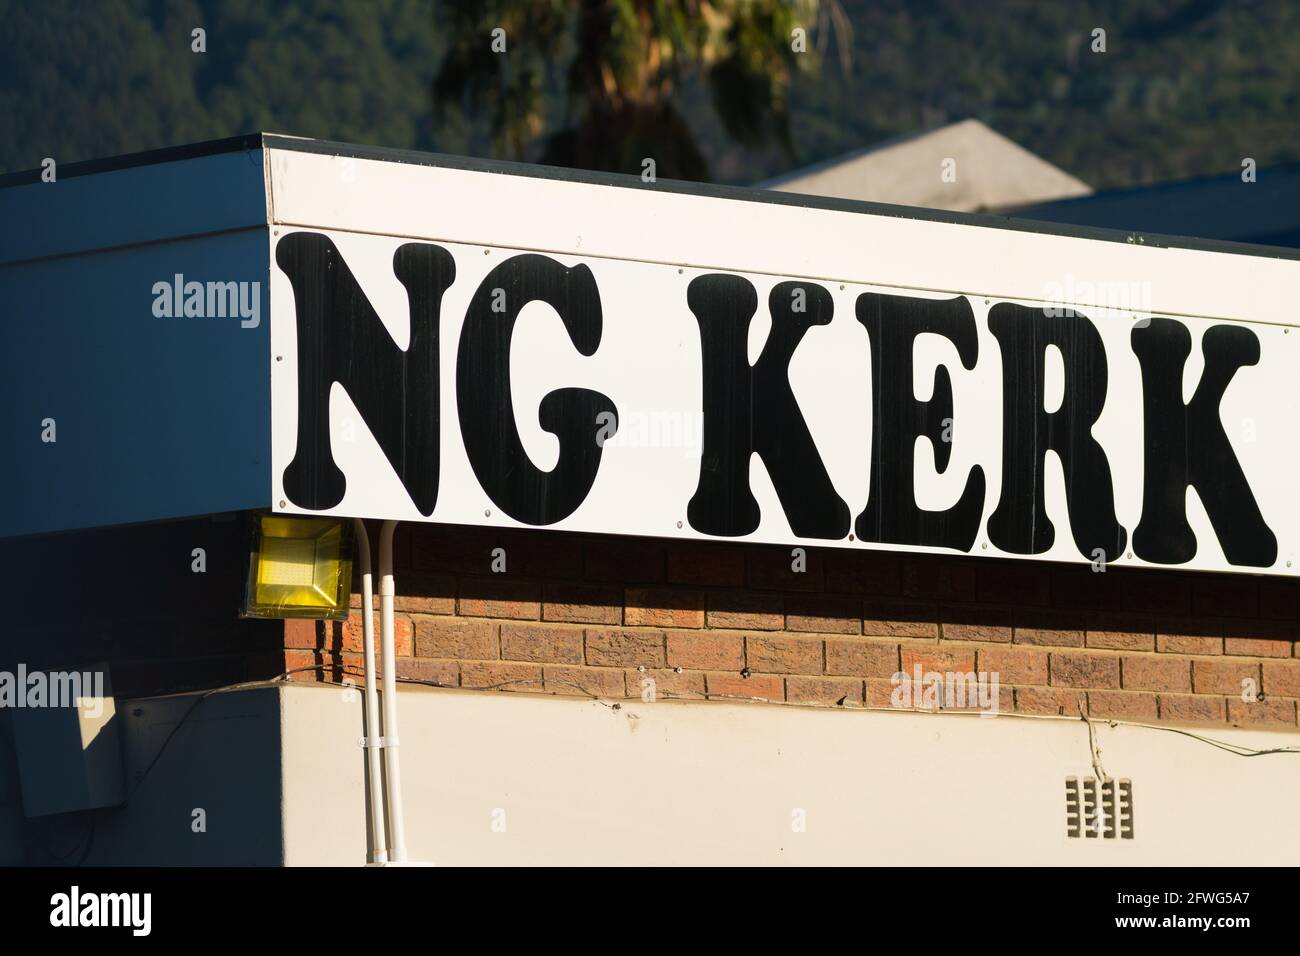 N G signo Kerk y banner sobre un concepto de construcción Religión sudafricana en la cultura afrikaans Foto de stock